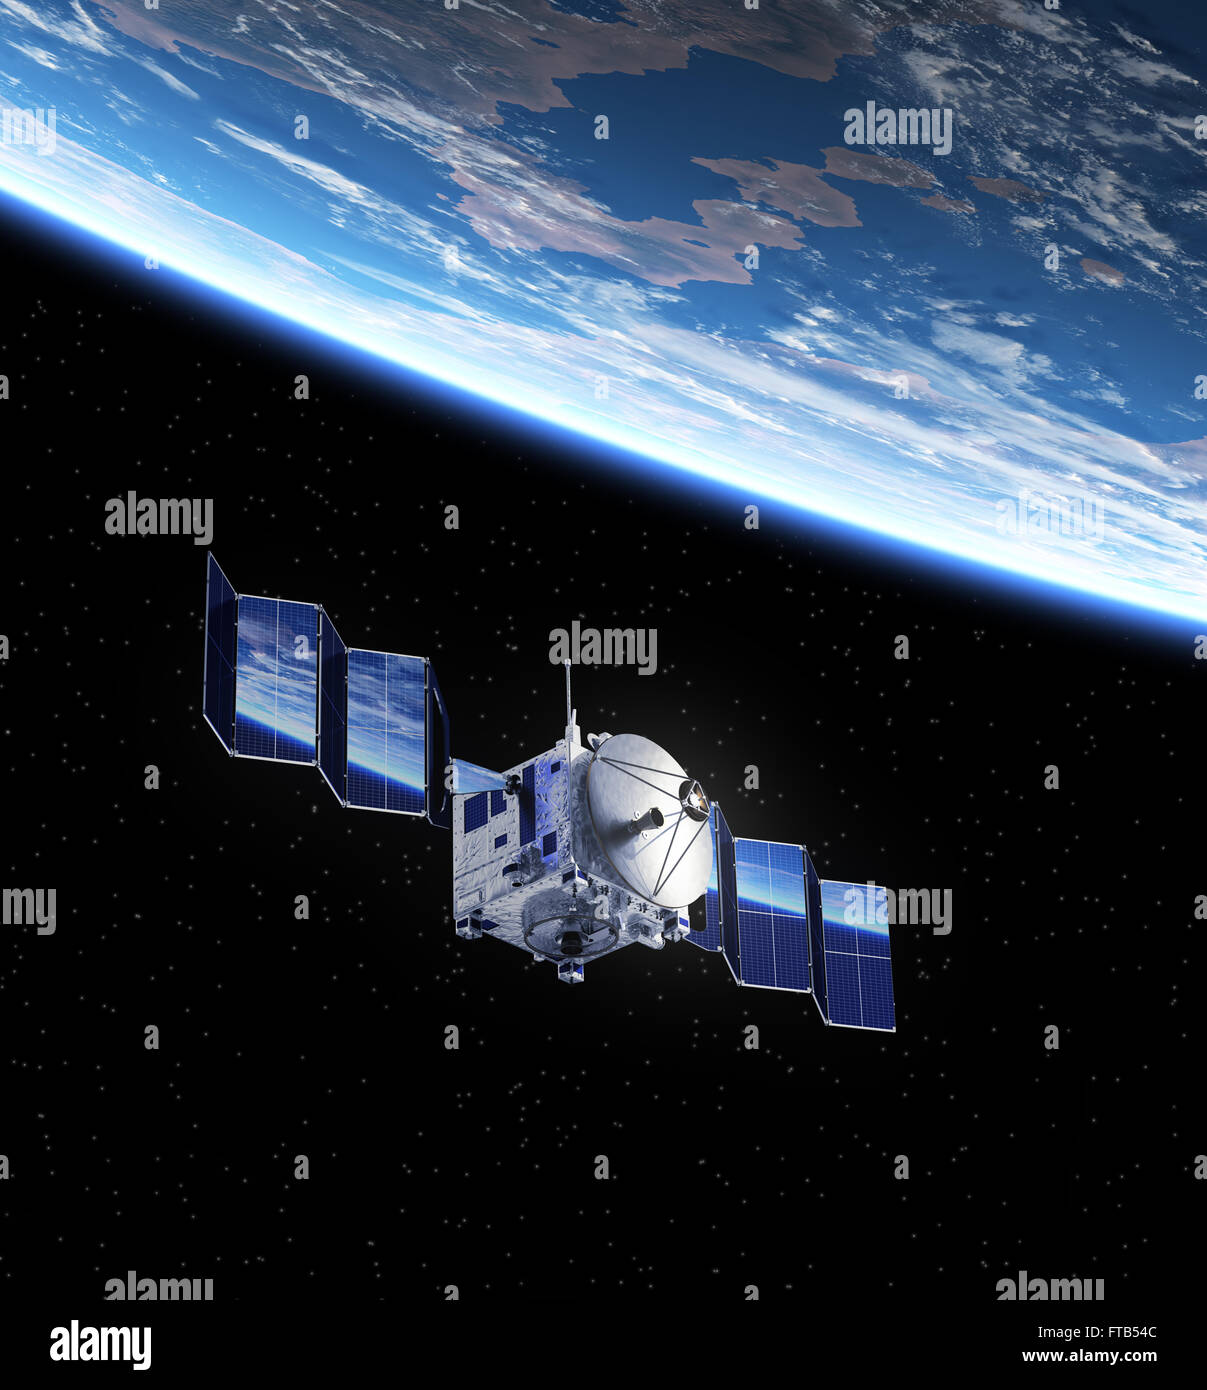 Satellite Deploys Solar Panels In Space. 3D Scene. Stock Photo